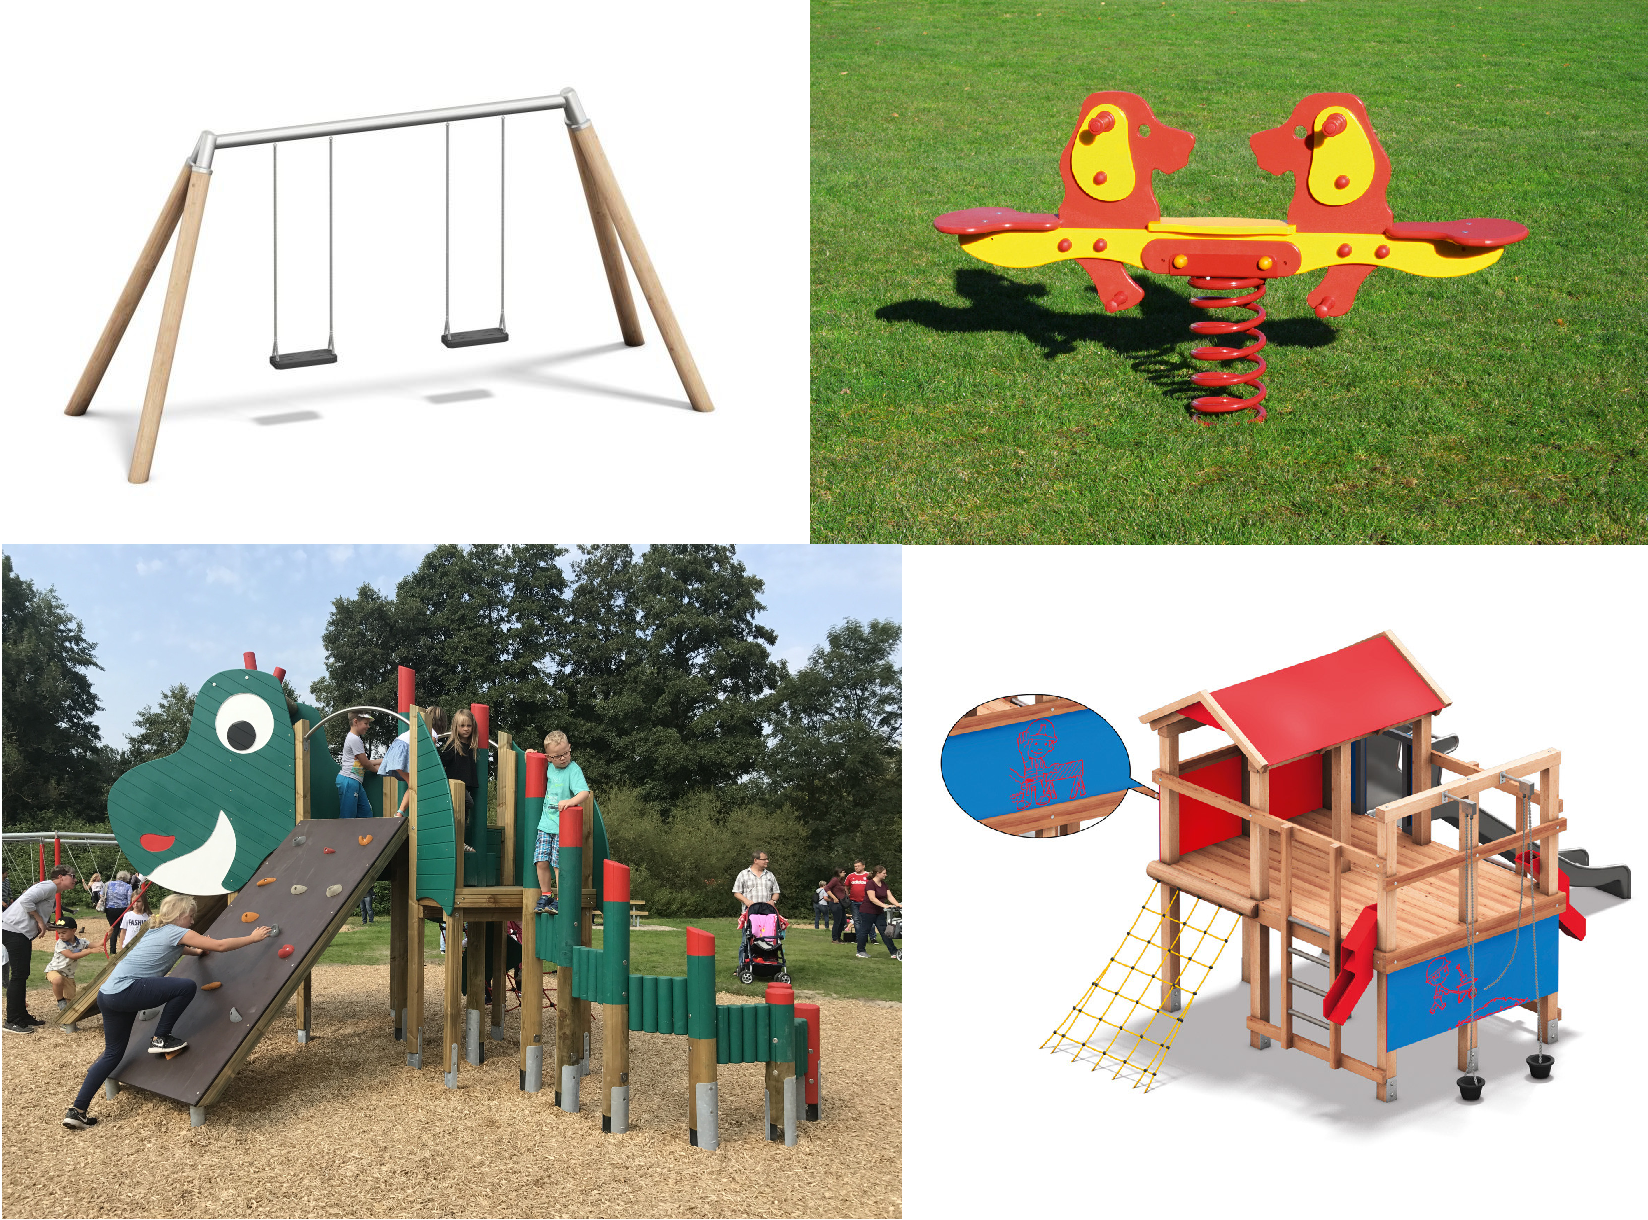 NEOSPIEL (so funktioniert Spiel): sowohl klassische Spielgeräte wie Schaukeln, Karusselle, Rutschbahnen, Klettergerüste etc. wie auch innovative Spielideen aus Holz und Metall für den öffentlichen Raum.